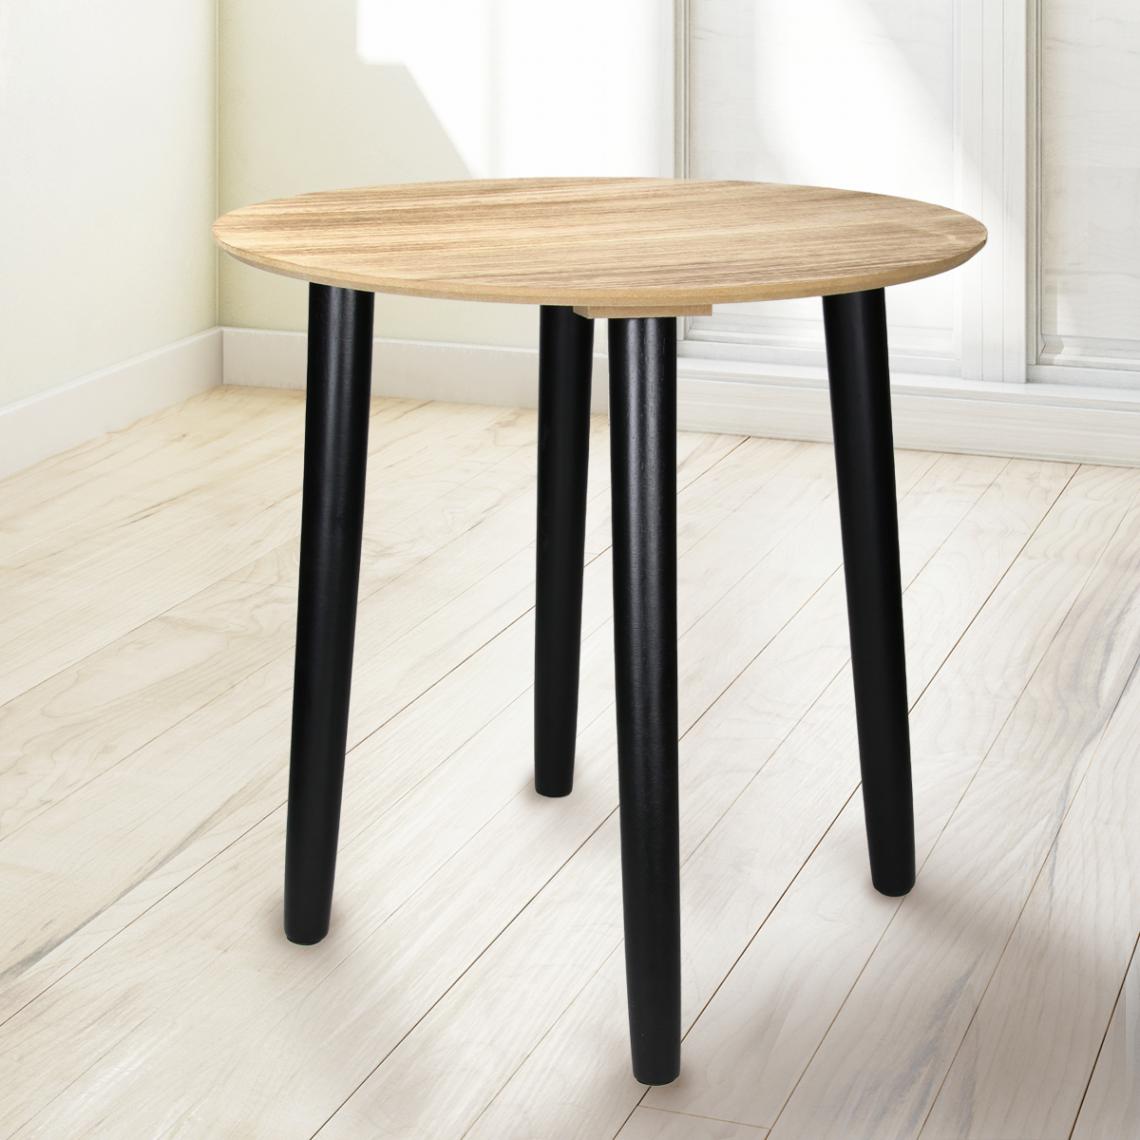 Ecd Germany - Table d'appoint ronde Ø 40cm table basse tabouret à plantes pour salon cuisine - Tables à manger